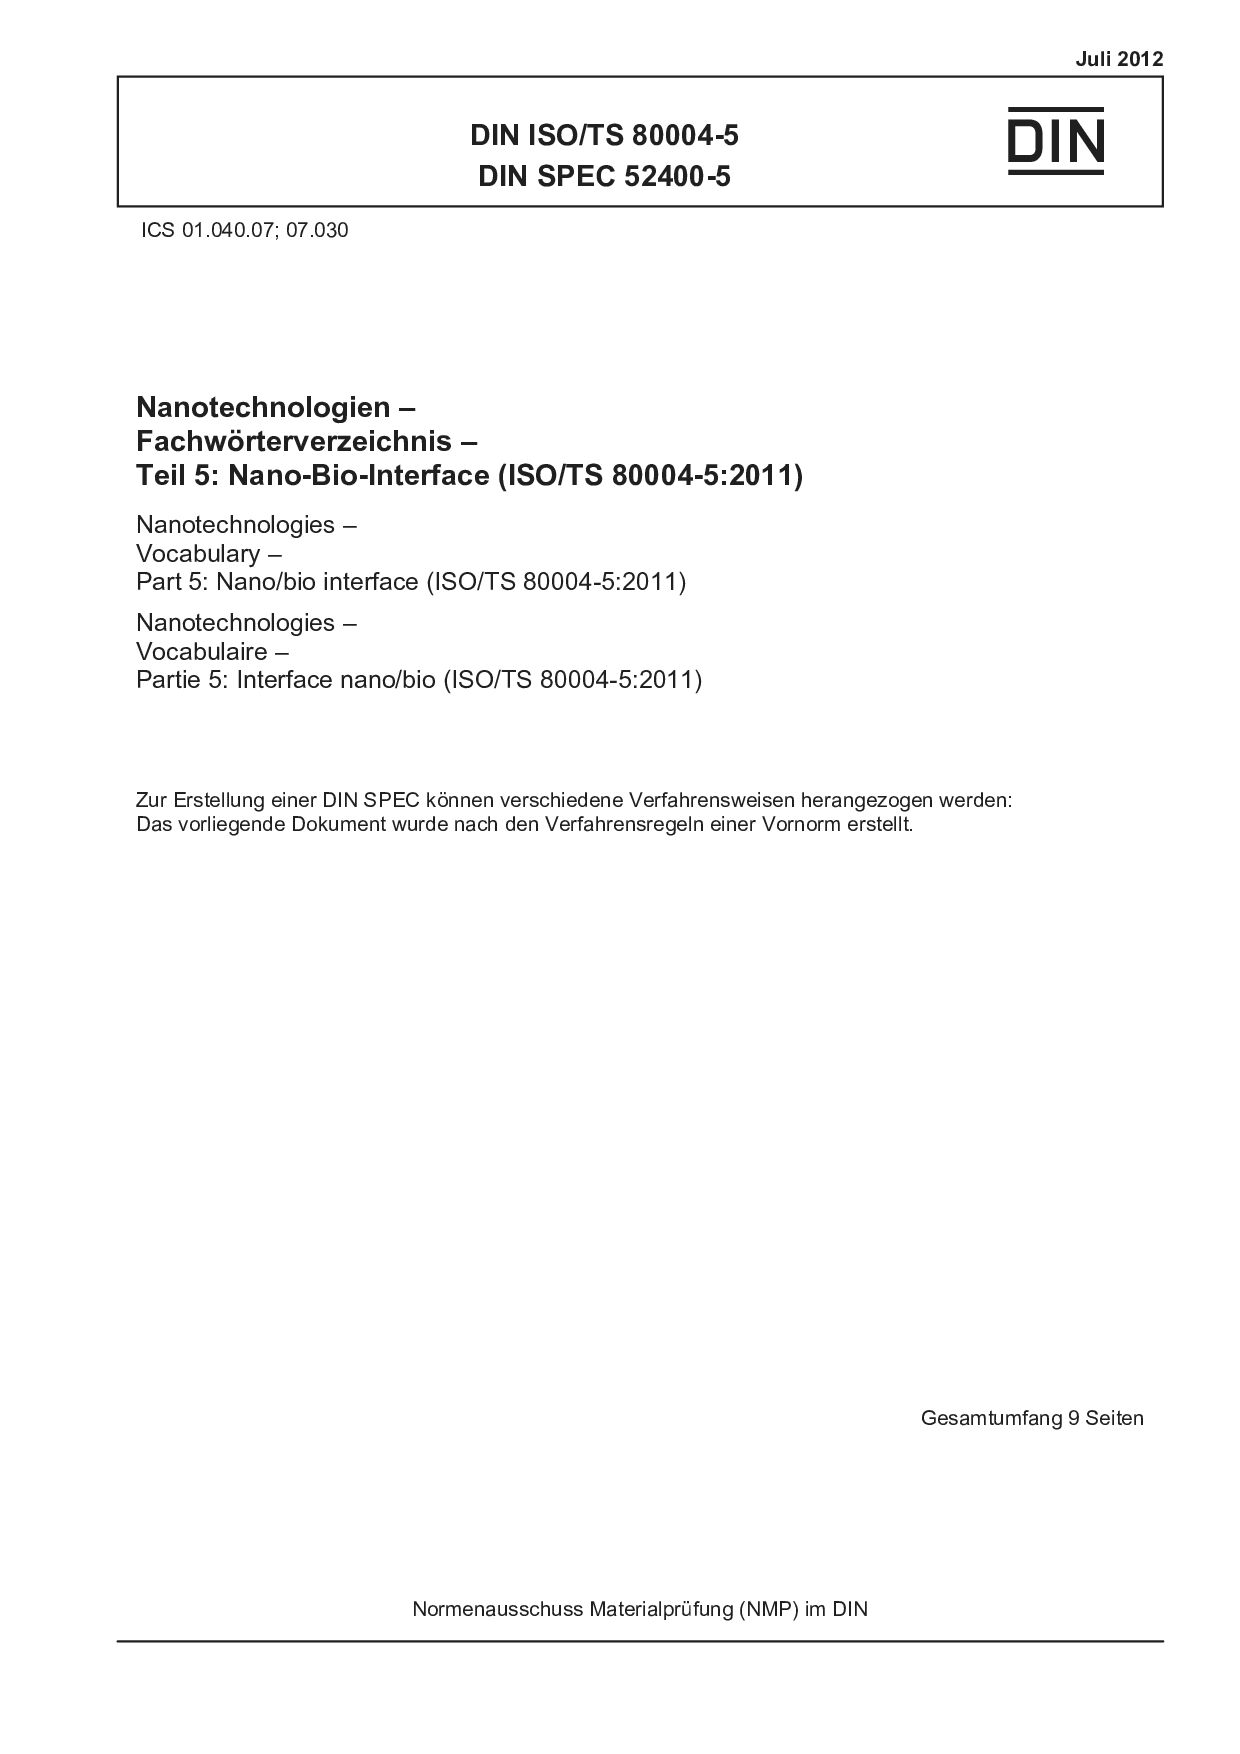 DIN ISO/TS 80004-5:2012